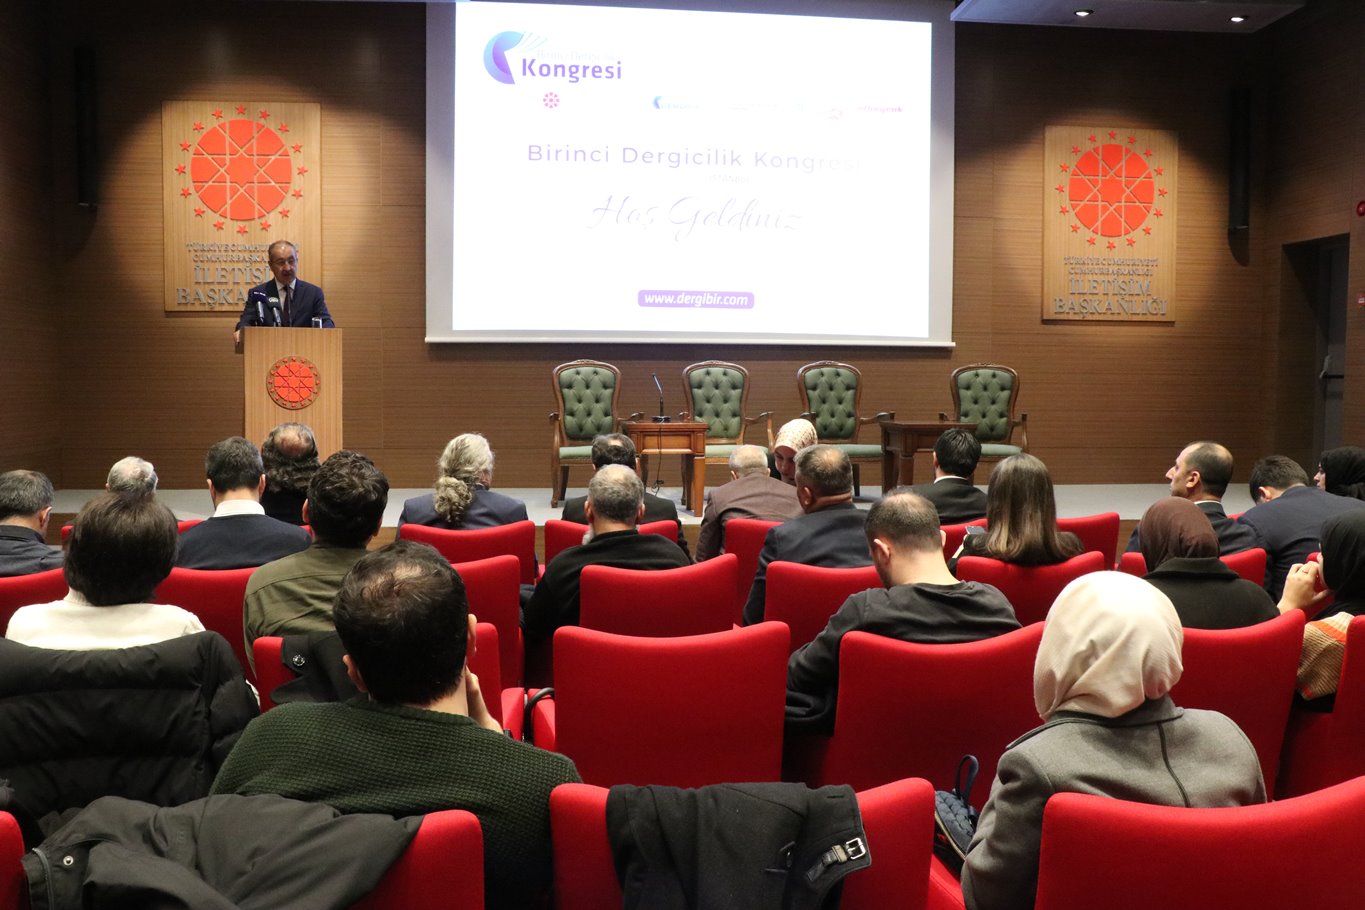 "Birinci Dergicilik Kongresi" İstanbul'da düzenlendi